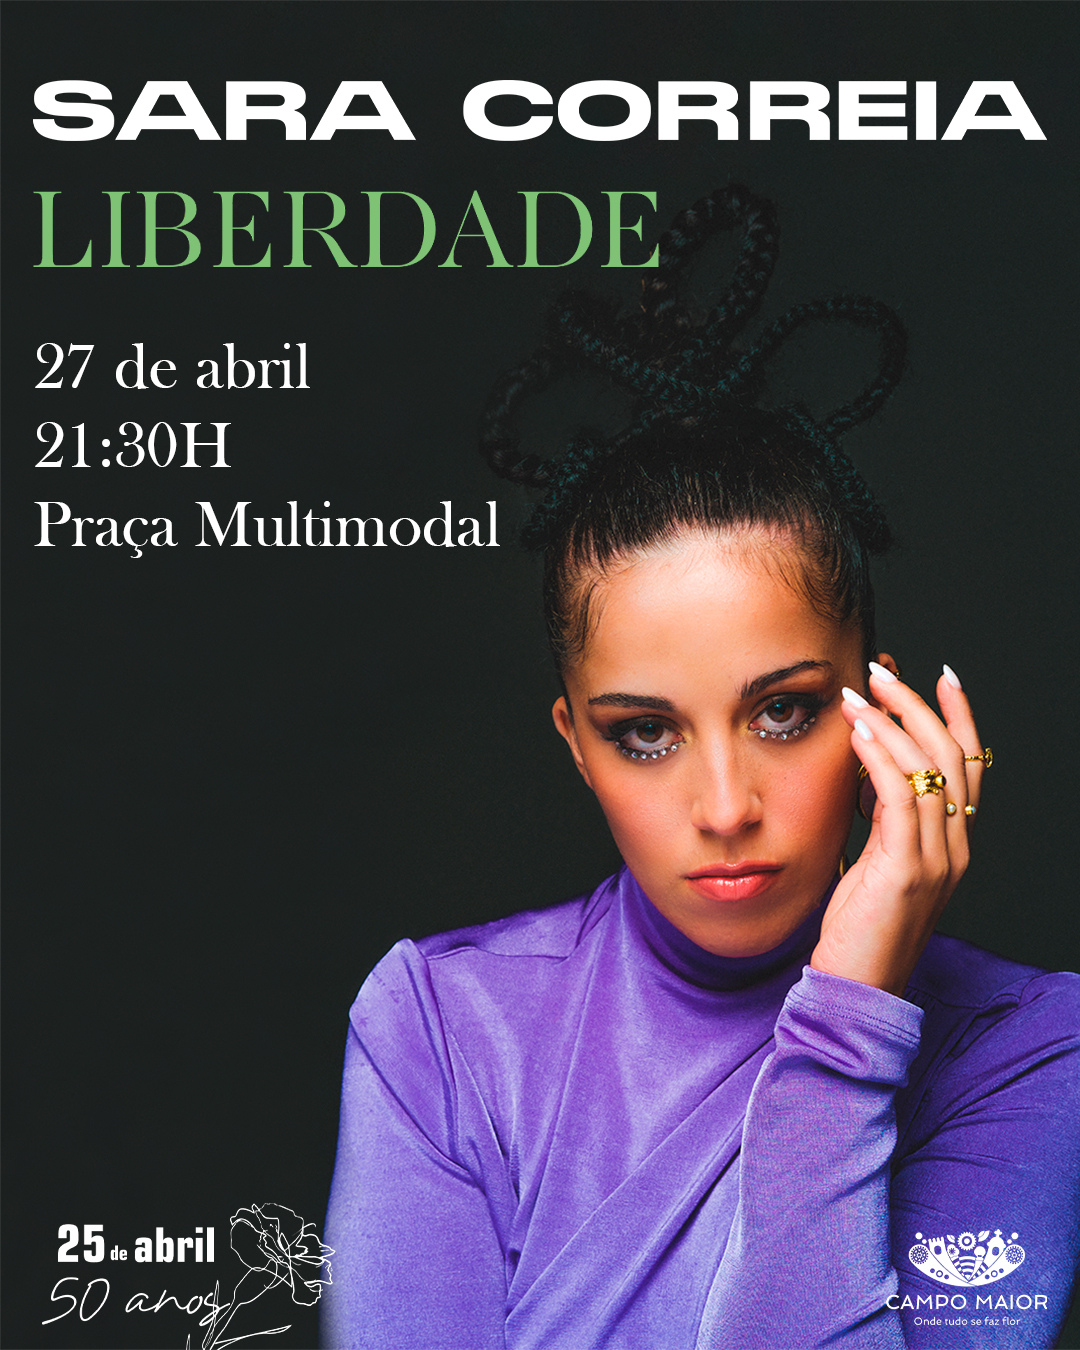 Capa Oficial do Evento Sara Correia- Tour Liberdade